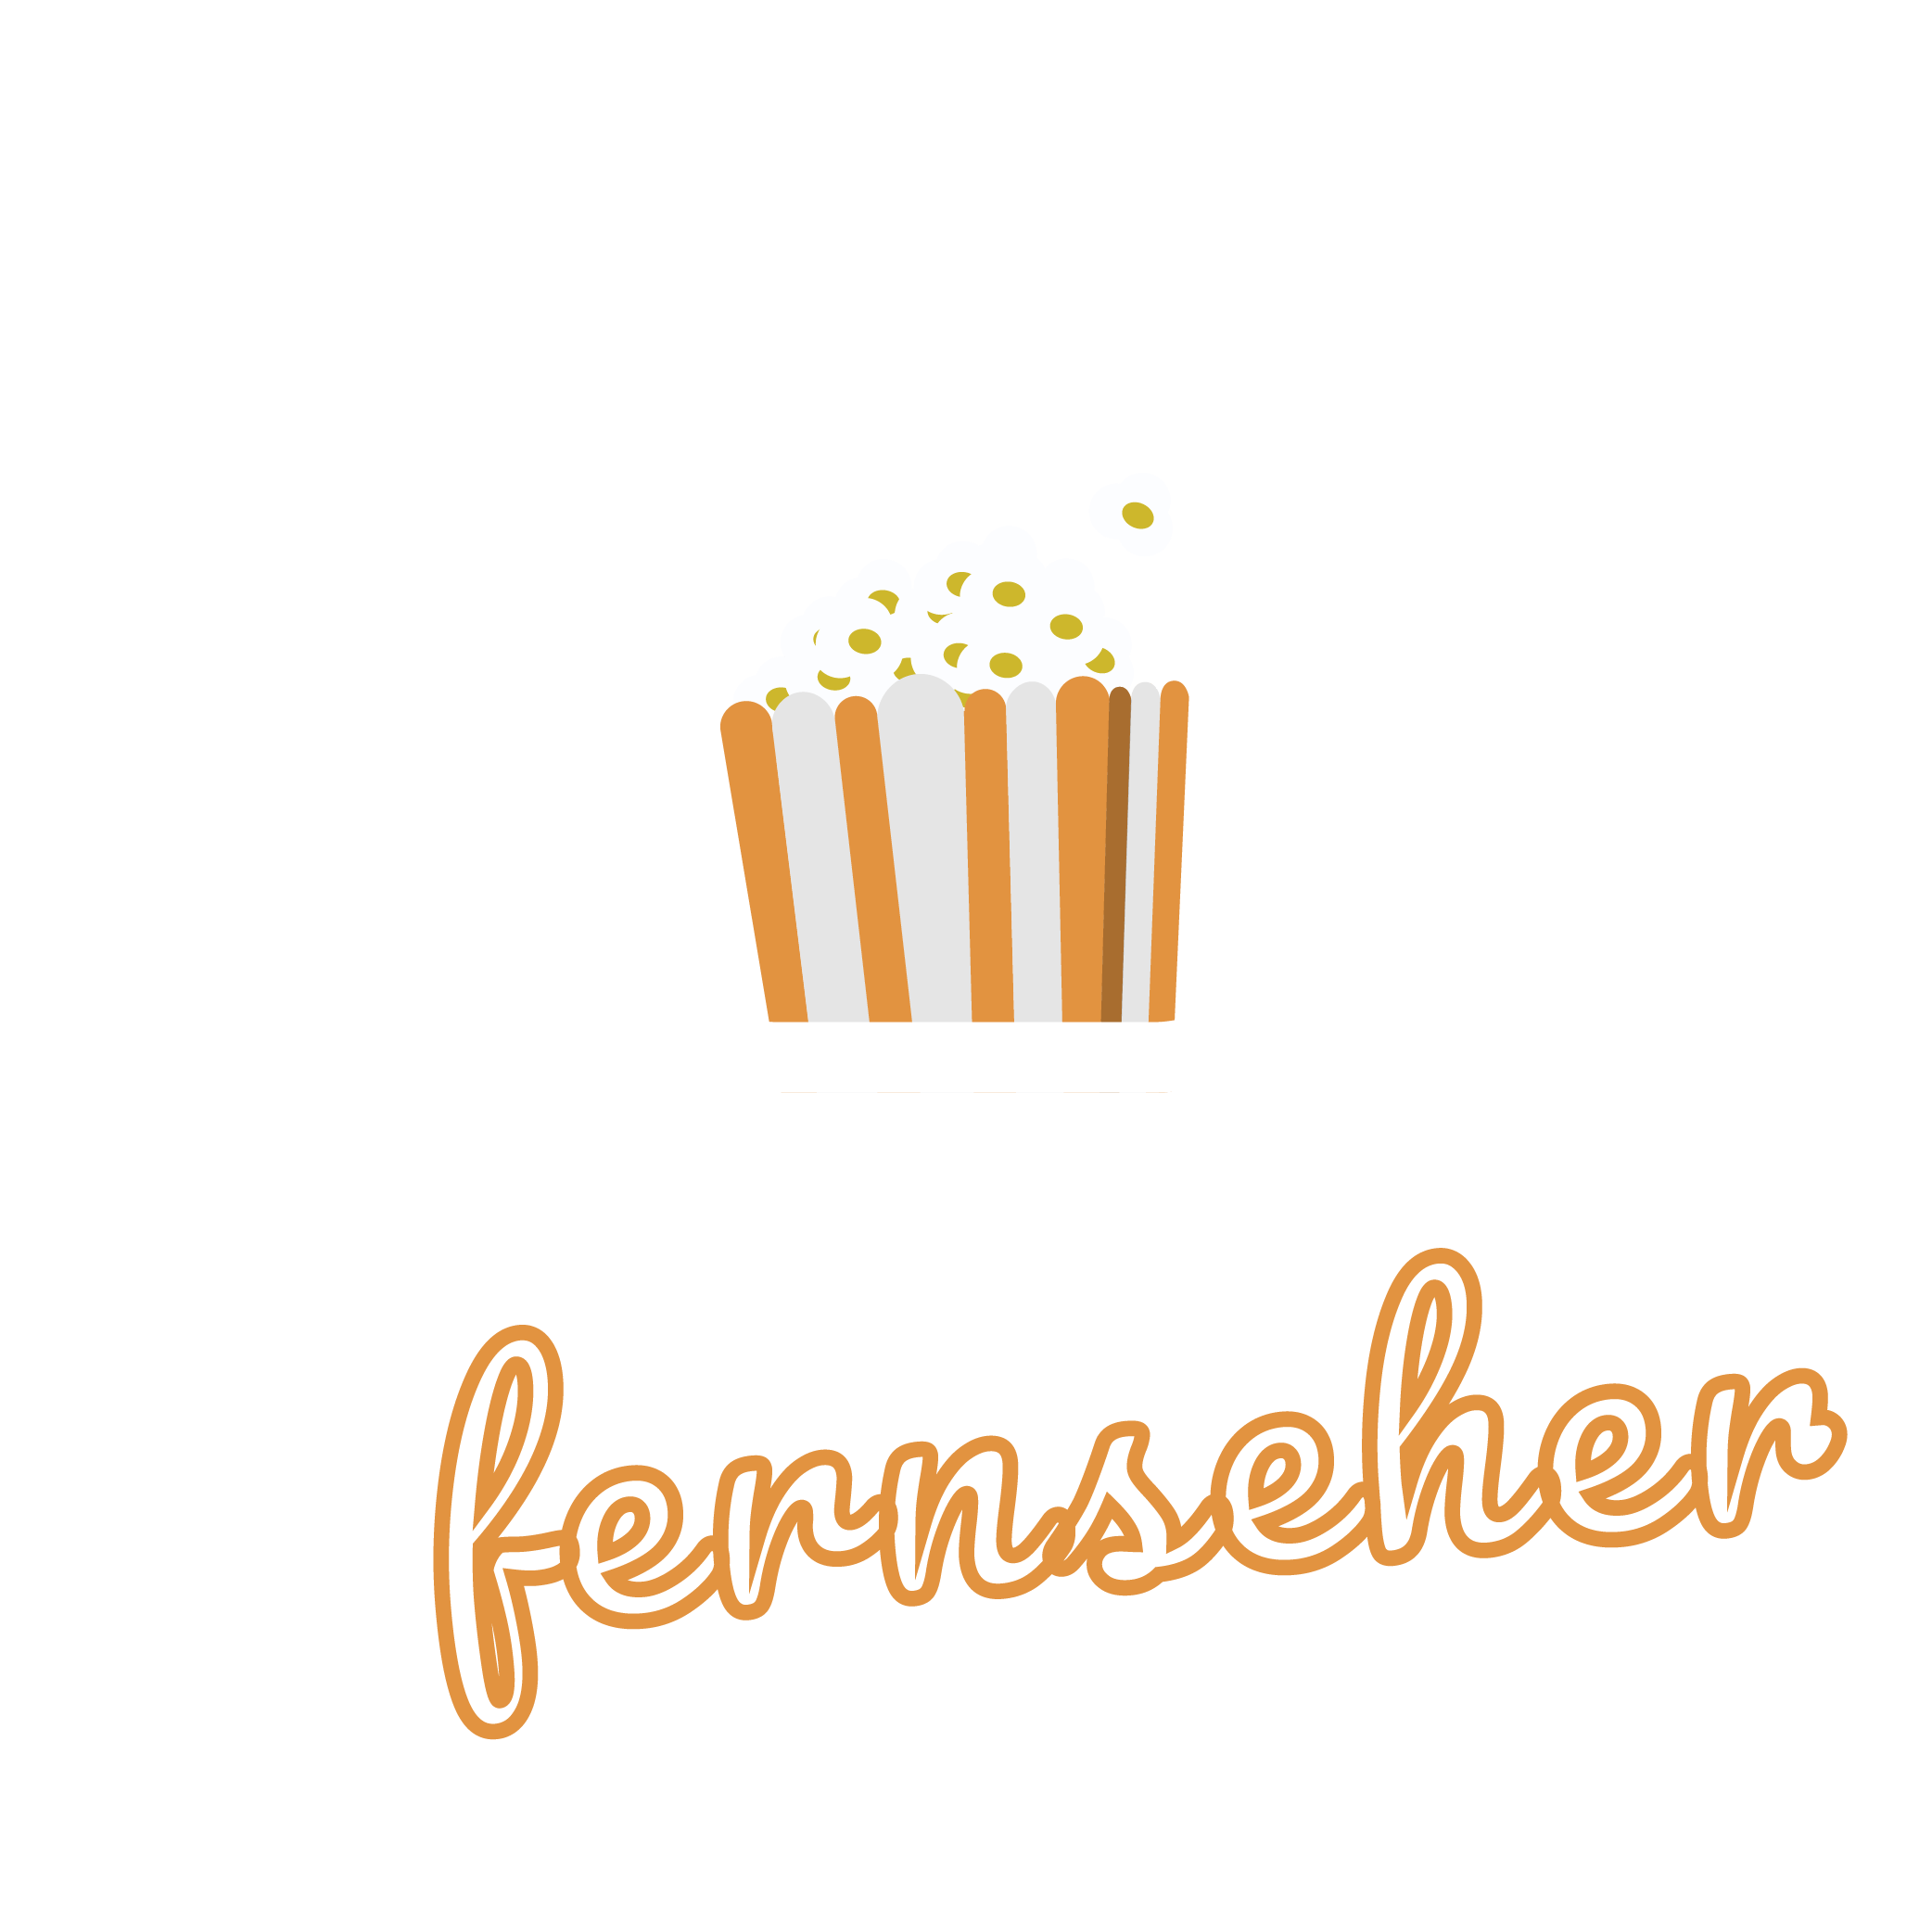 Plasmafernseher.de